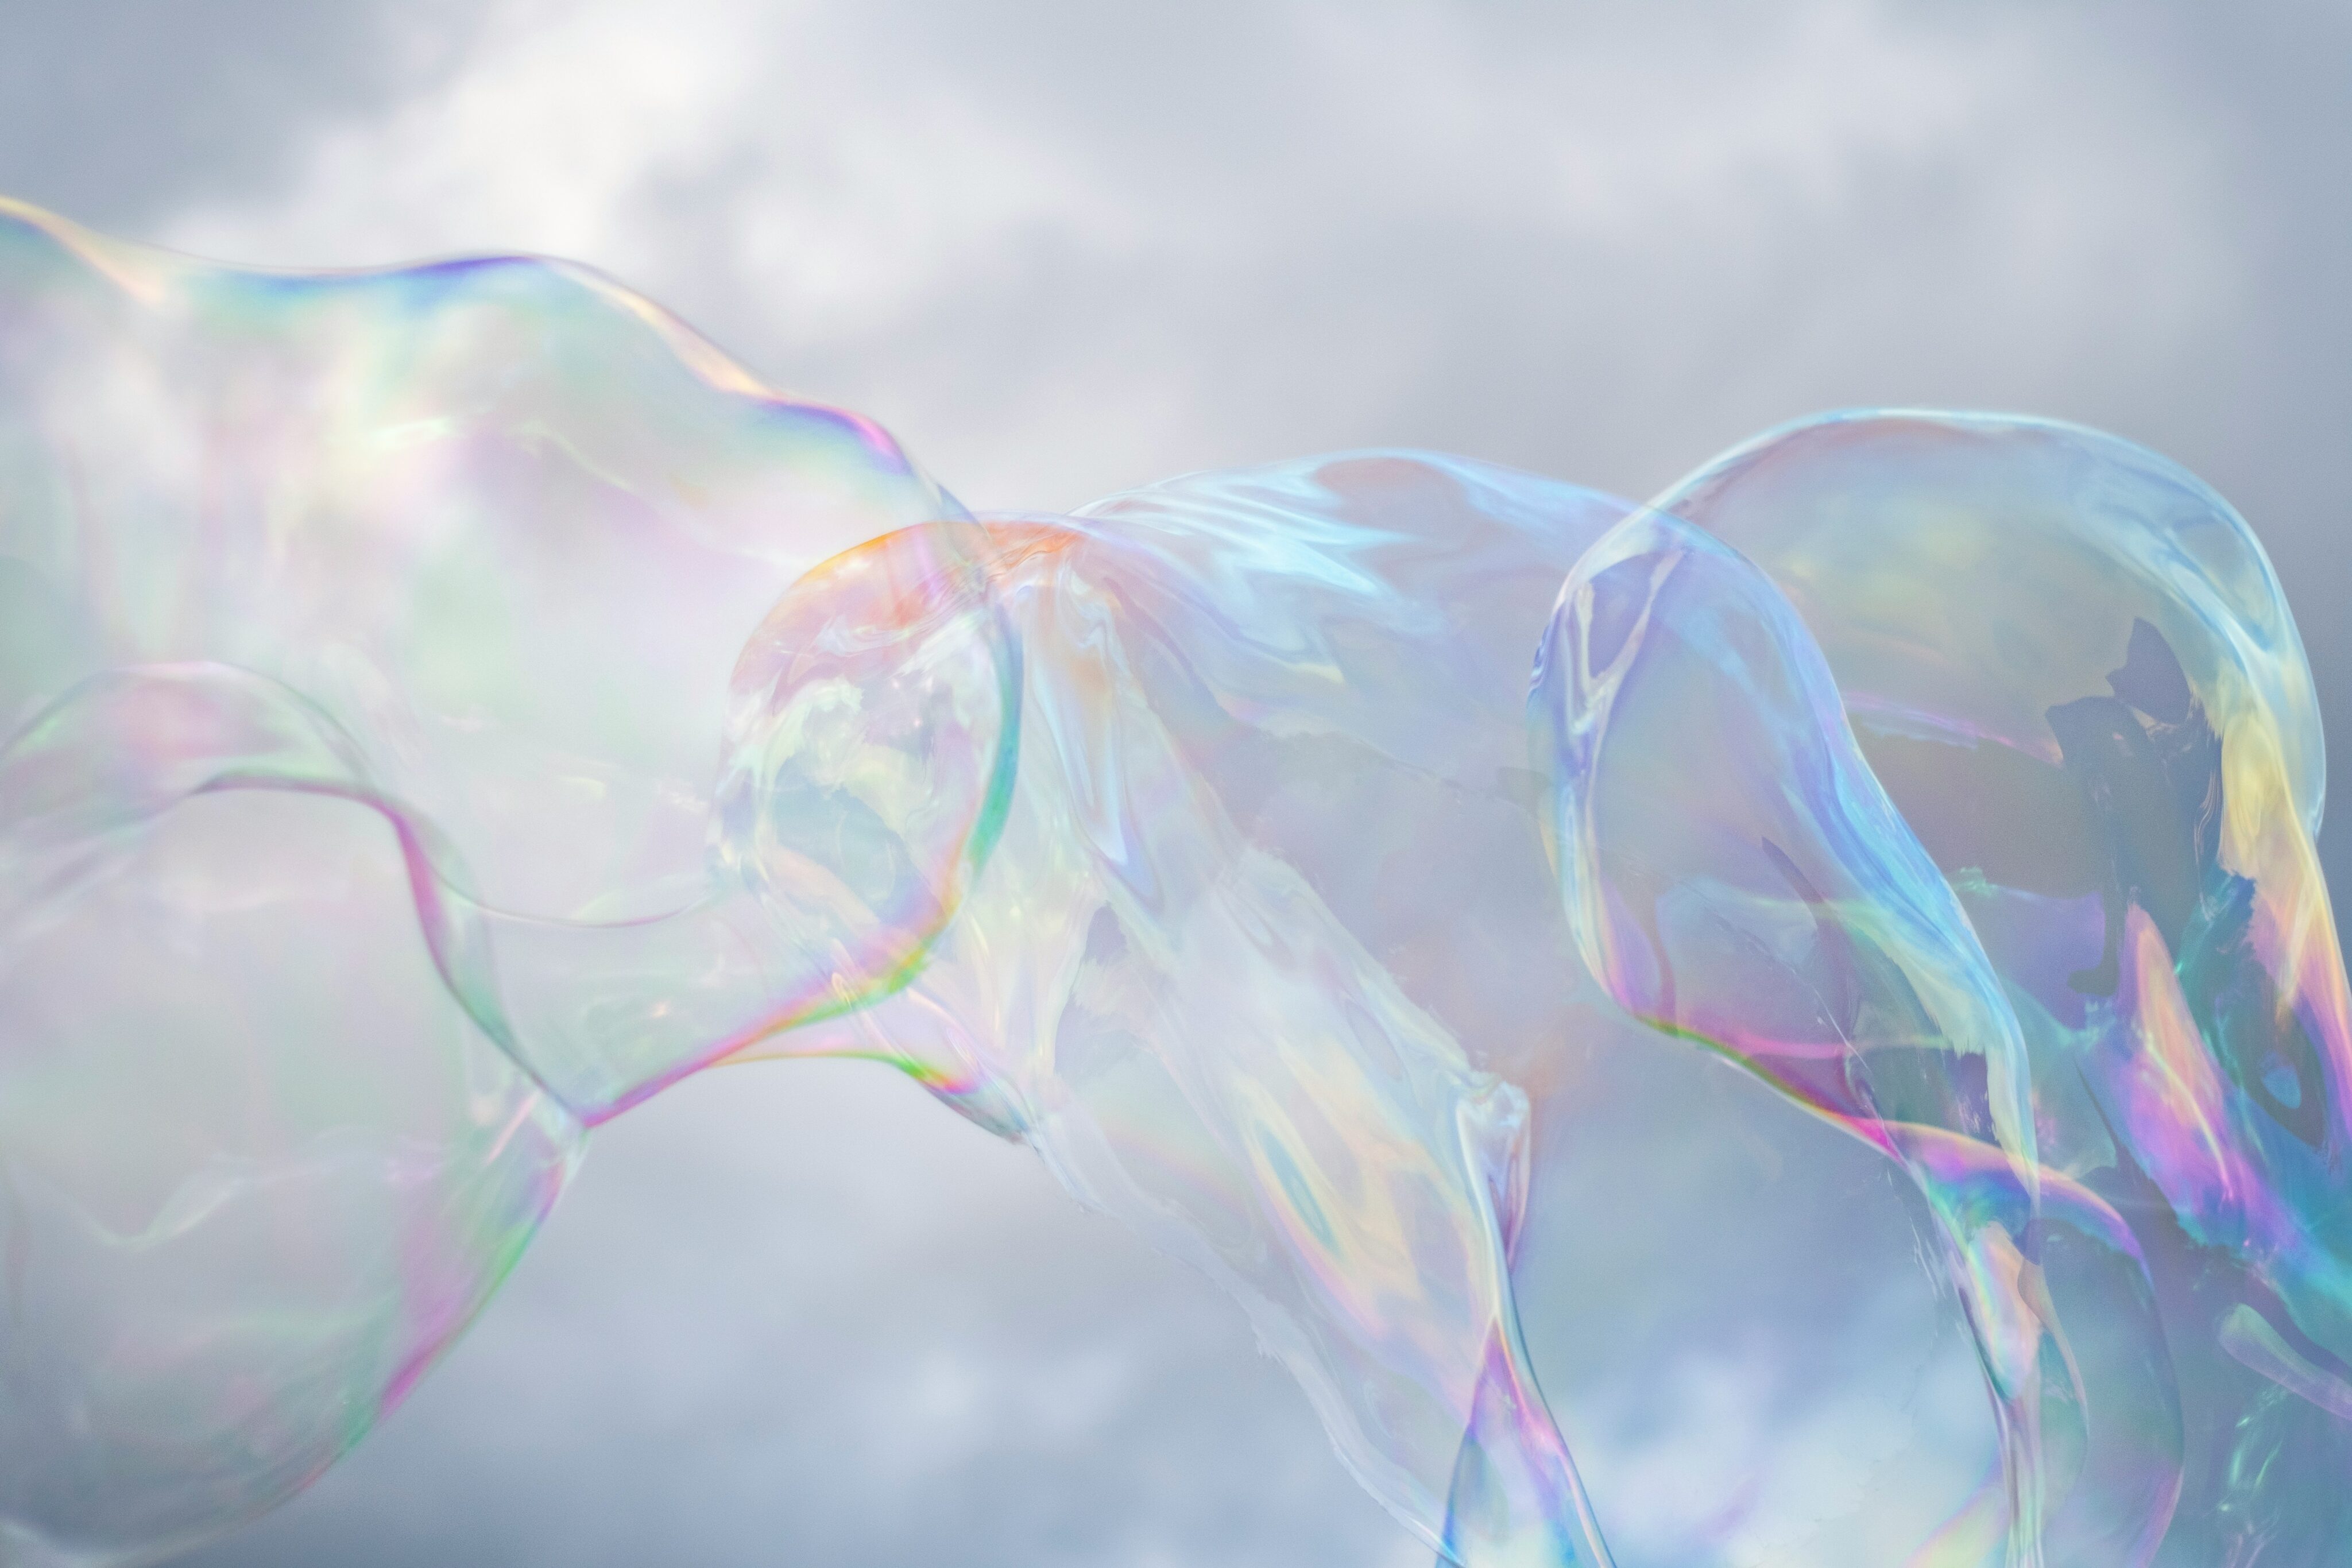 Aphtes dans la bouche : de grosses bulles de savon scintillent de différentes couleurs sur fond de ciel nuageux.